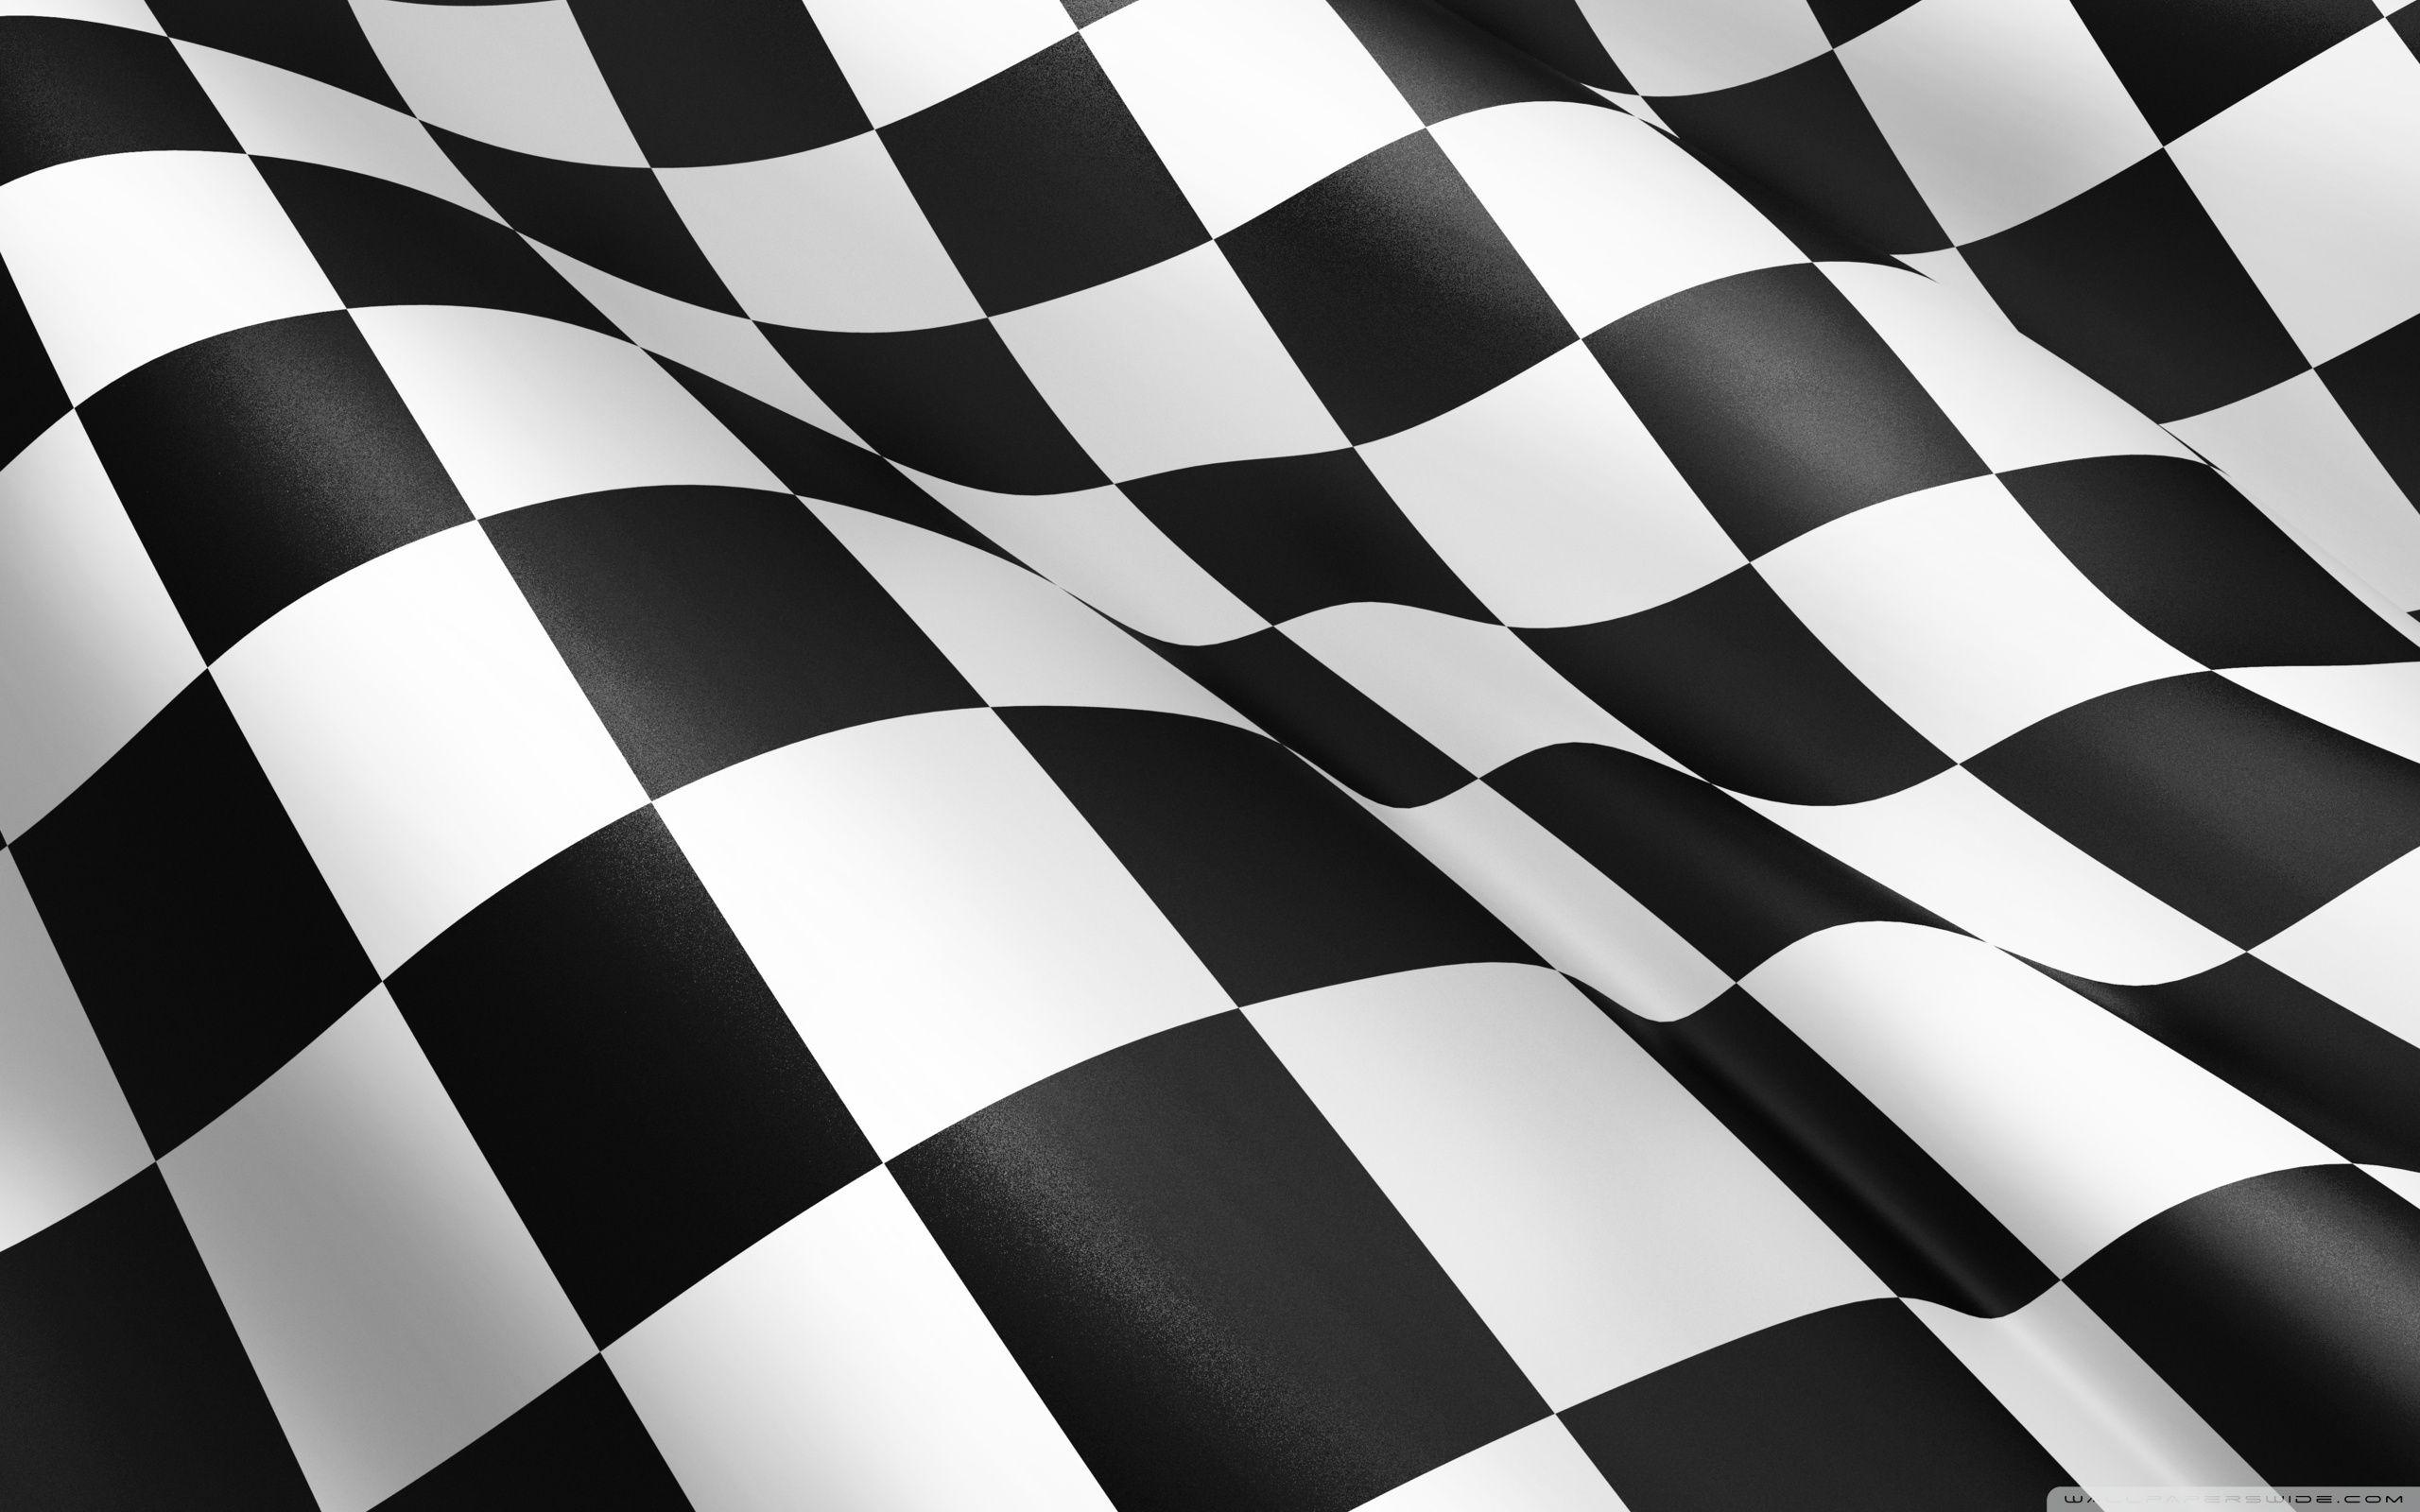 Download 7700 Koleksi Background Racing Hd Gratis Terbaik